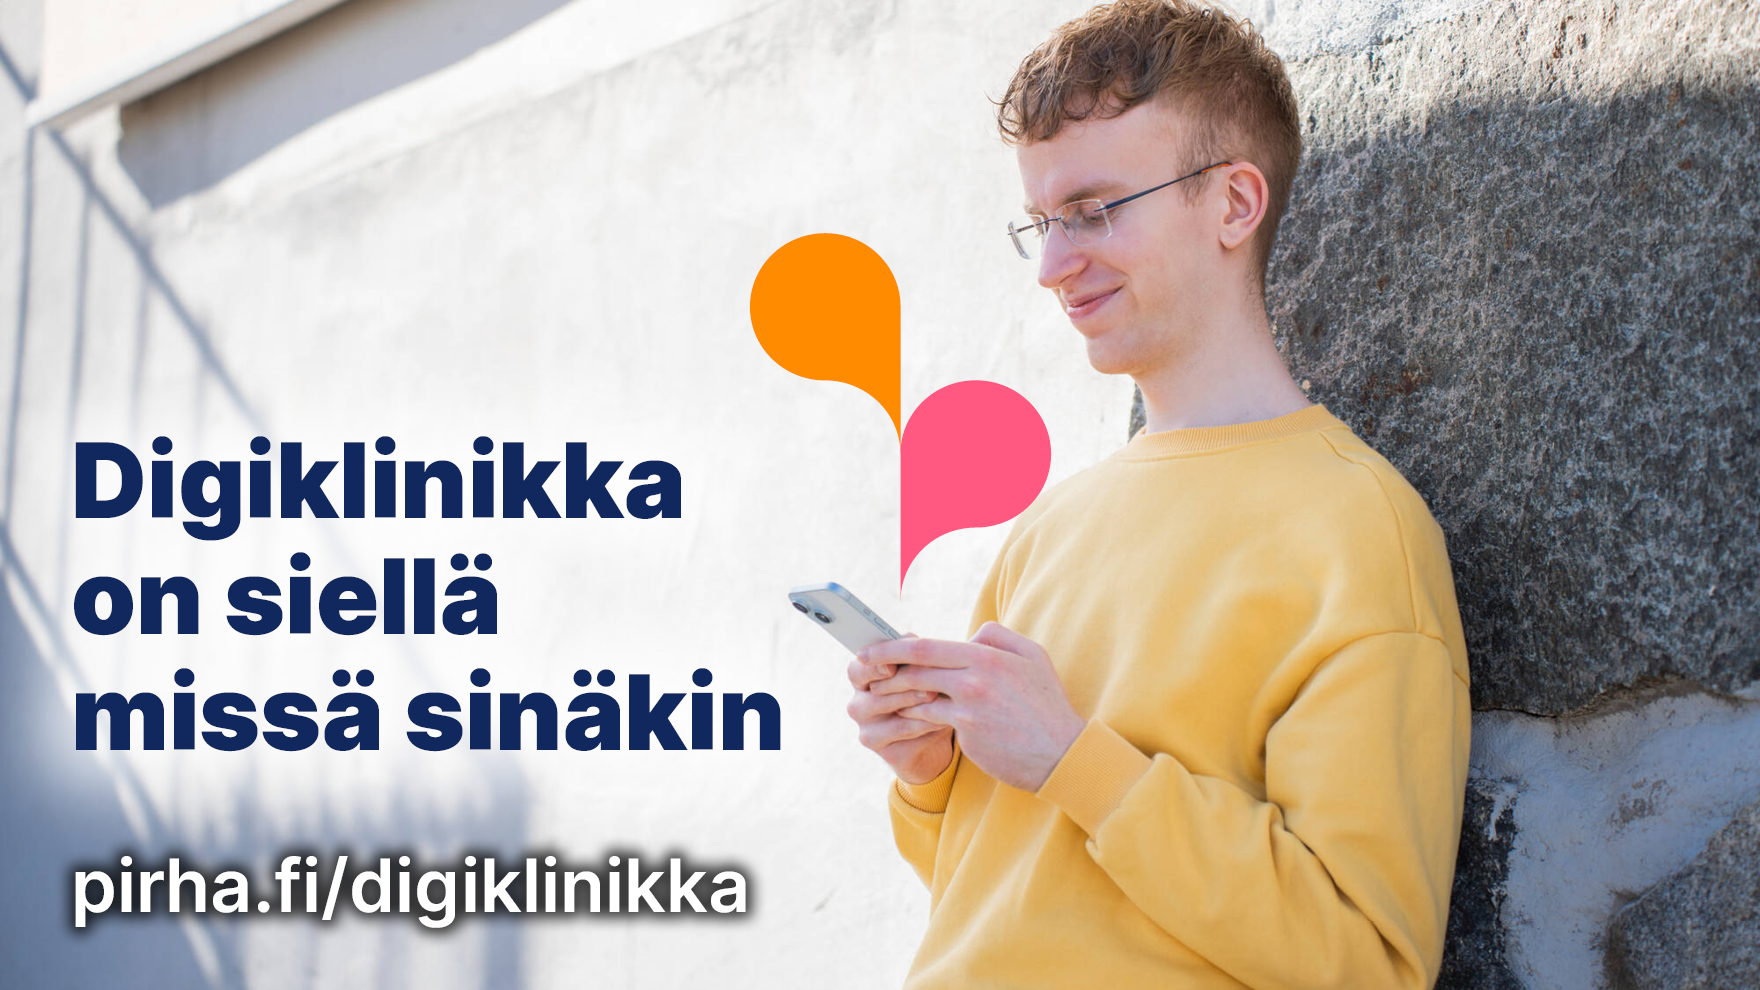 Kuvassa nuori mies nojaa ulkona rakennuksen seinään ja katsoo puhelinta.. Lisäksi kuvassa on teksti: Digiklinikka on siellä missä sinäkin, pirha.fi/digiklinikka.